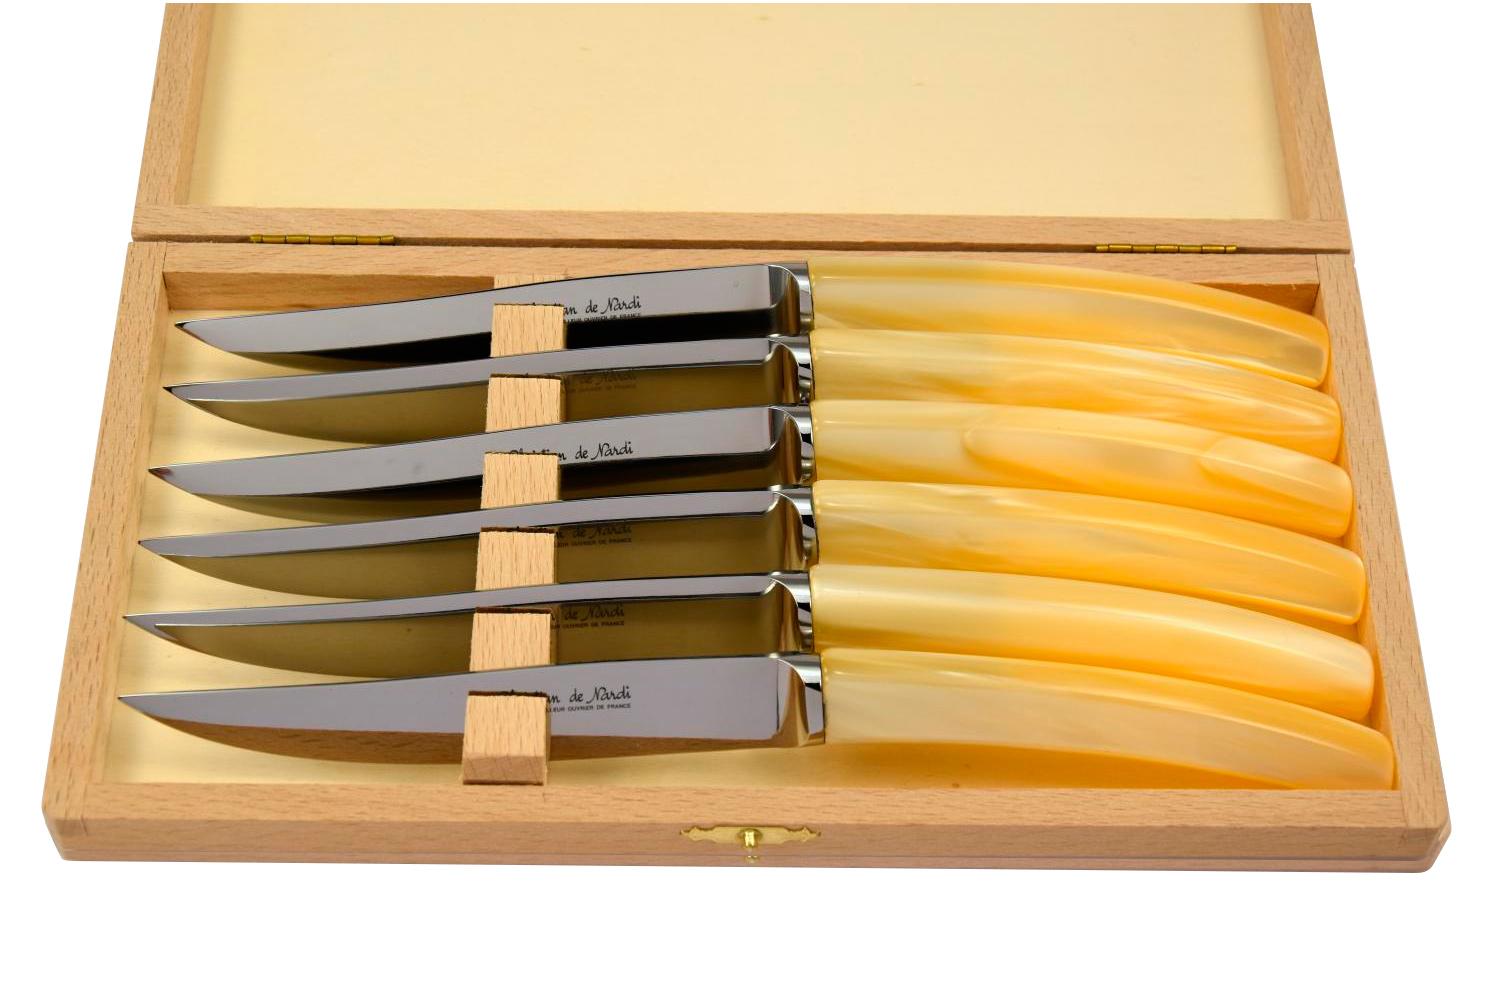 MODELE SILENE
couteau table par 6
manche plexi naturel nacré